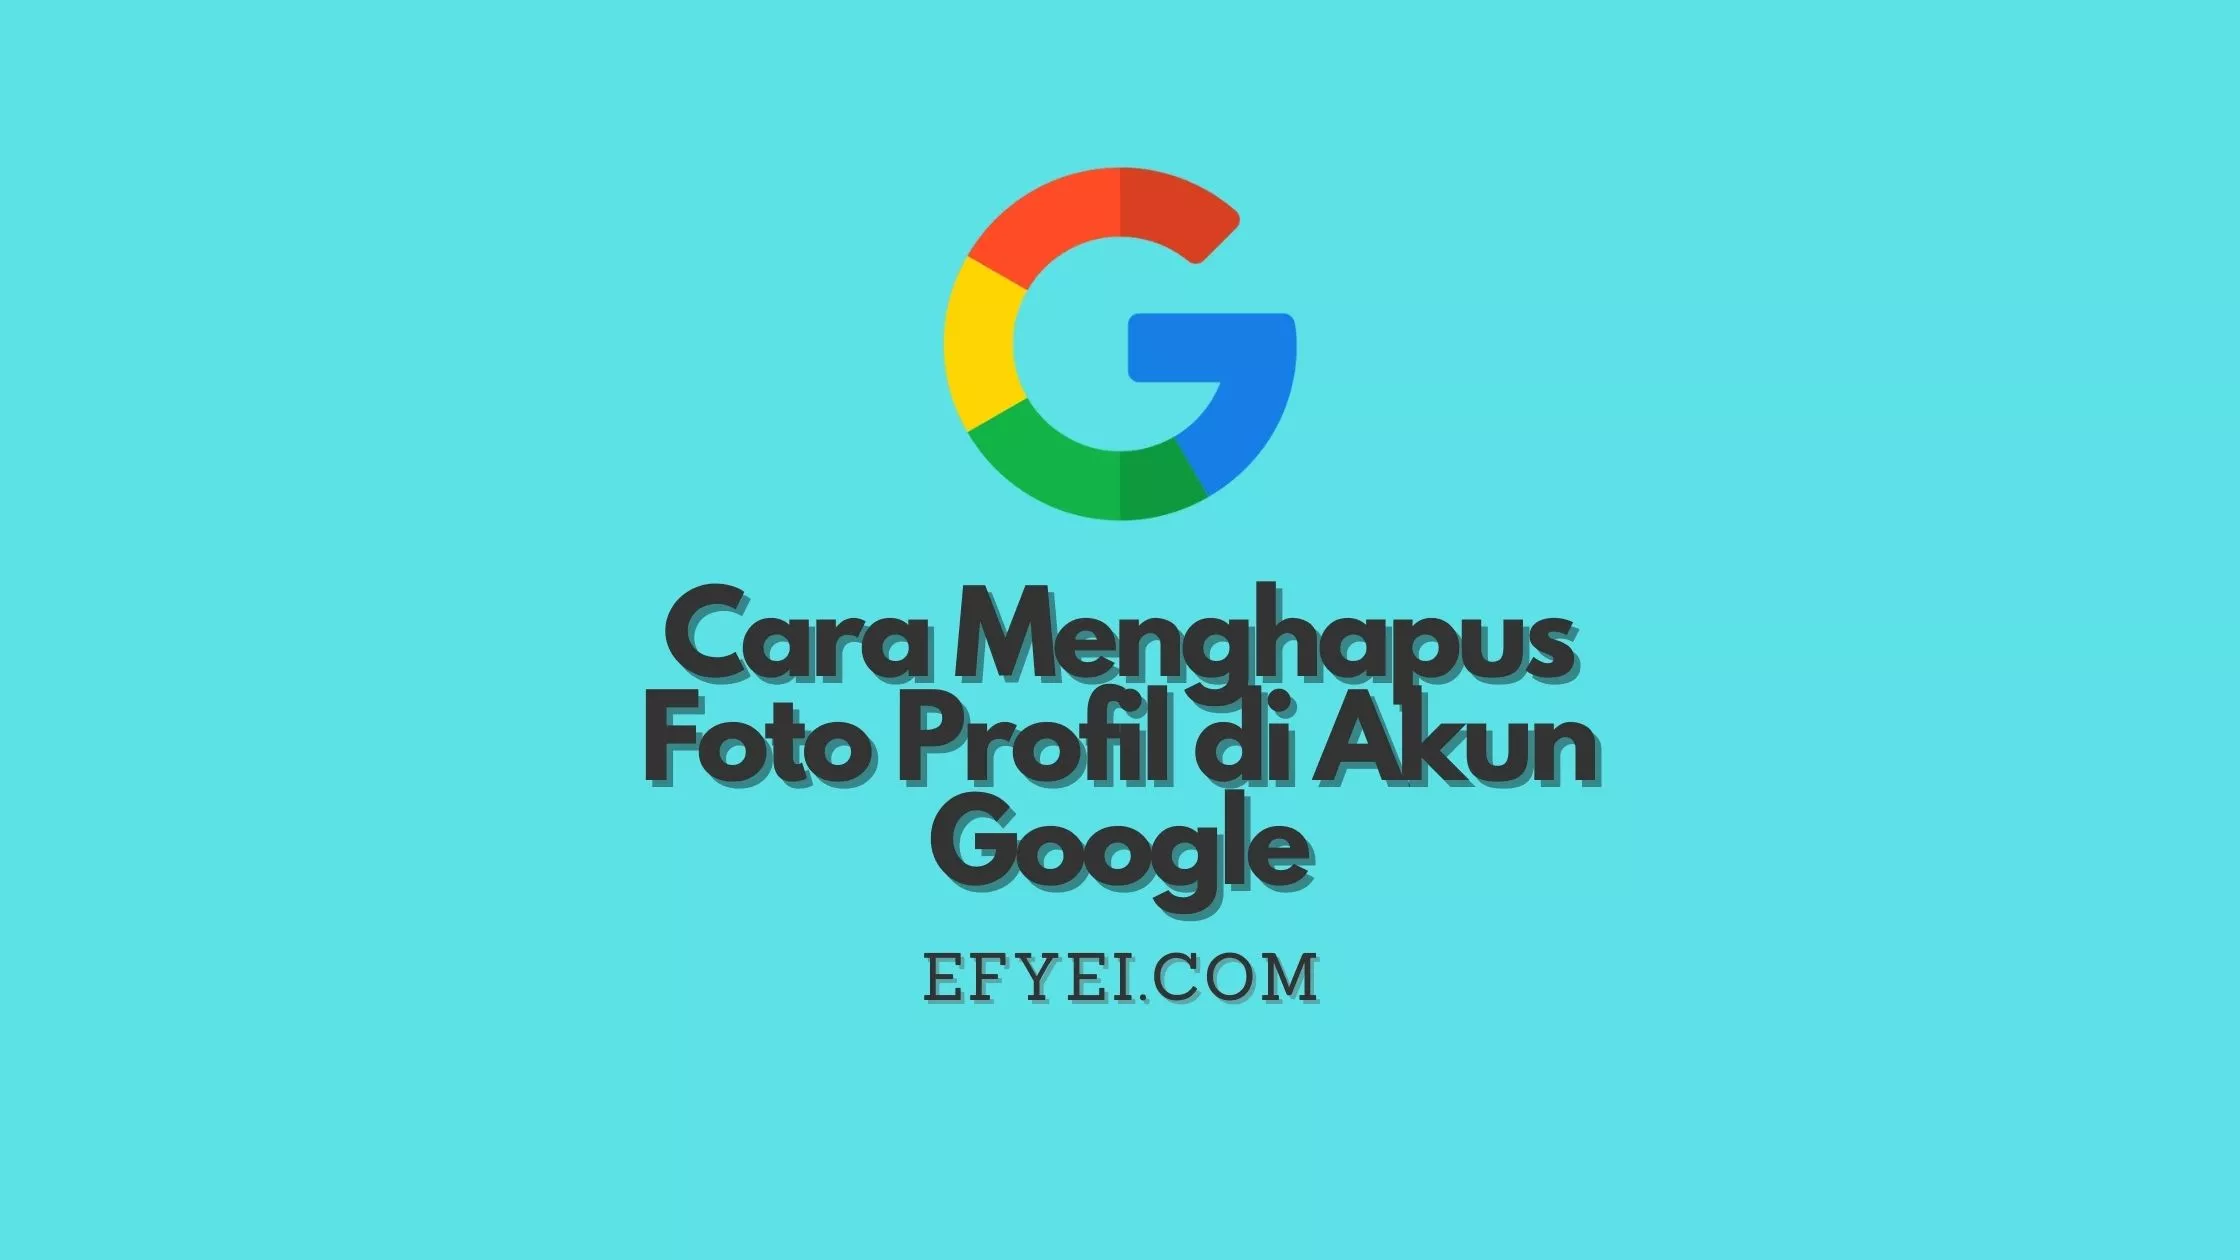 Cara Menghapus Foto Profil di Akun Google